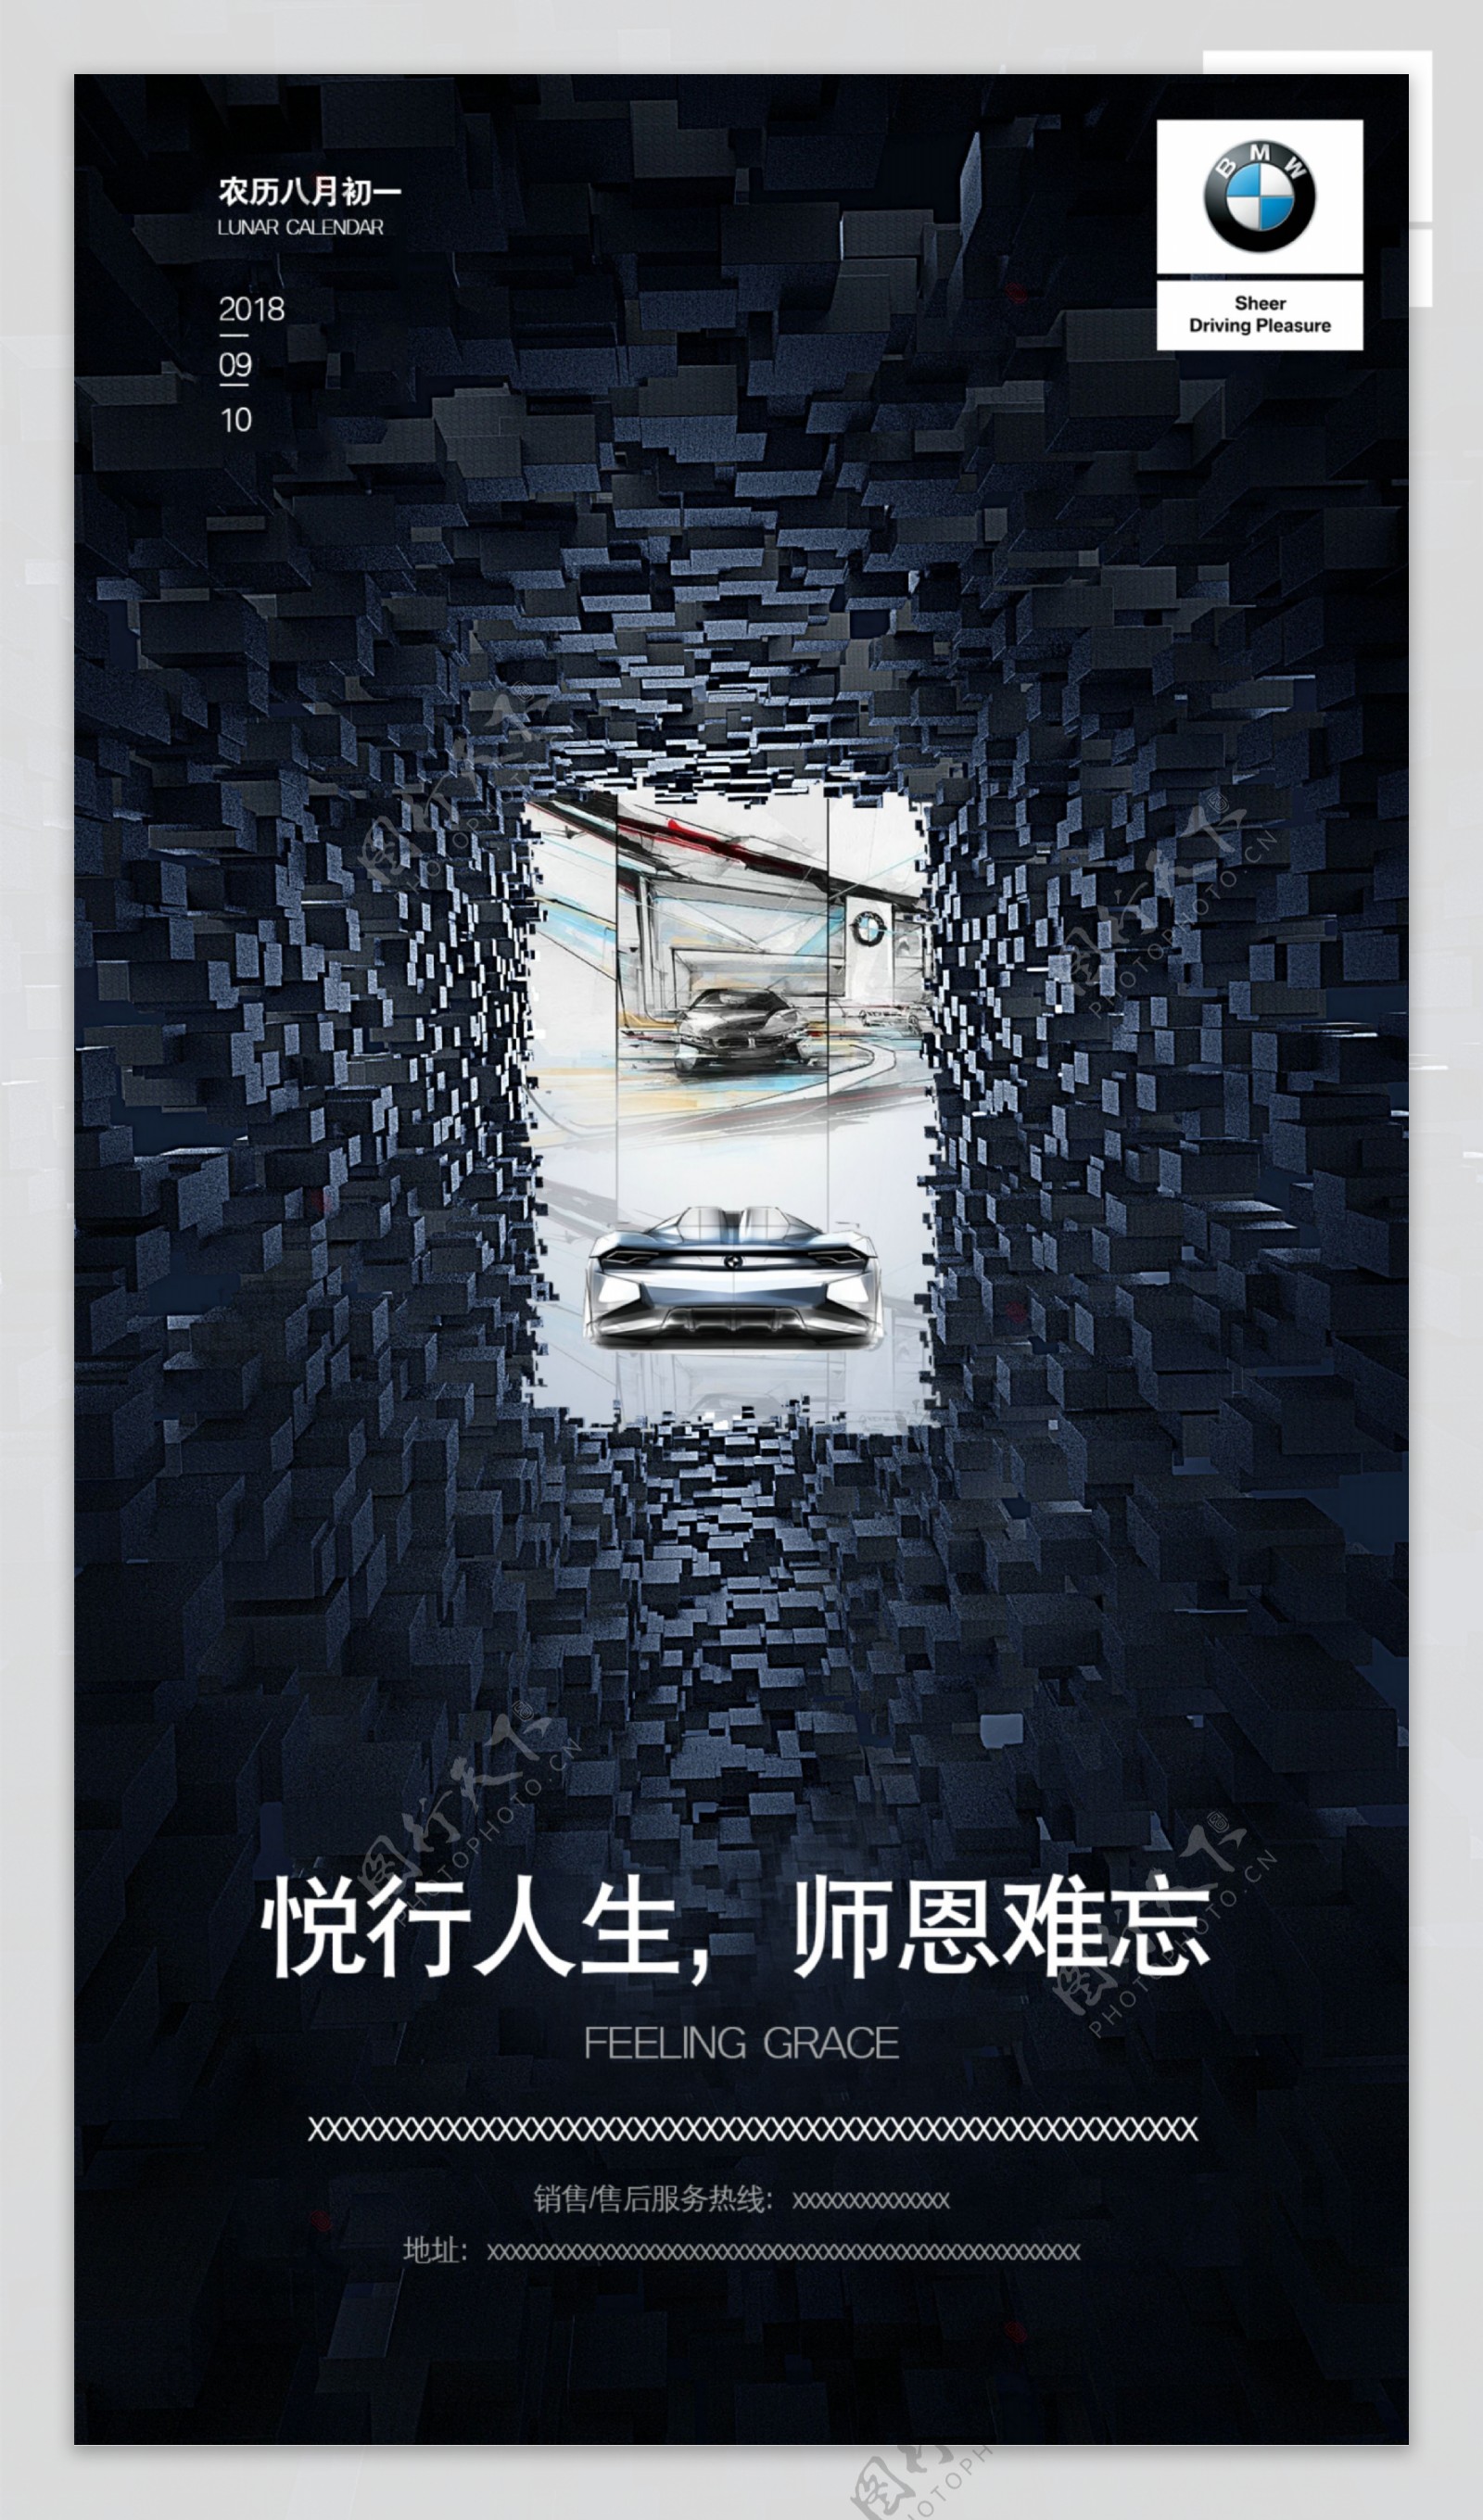 宝马汽车教师节活动促销宣传海报